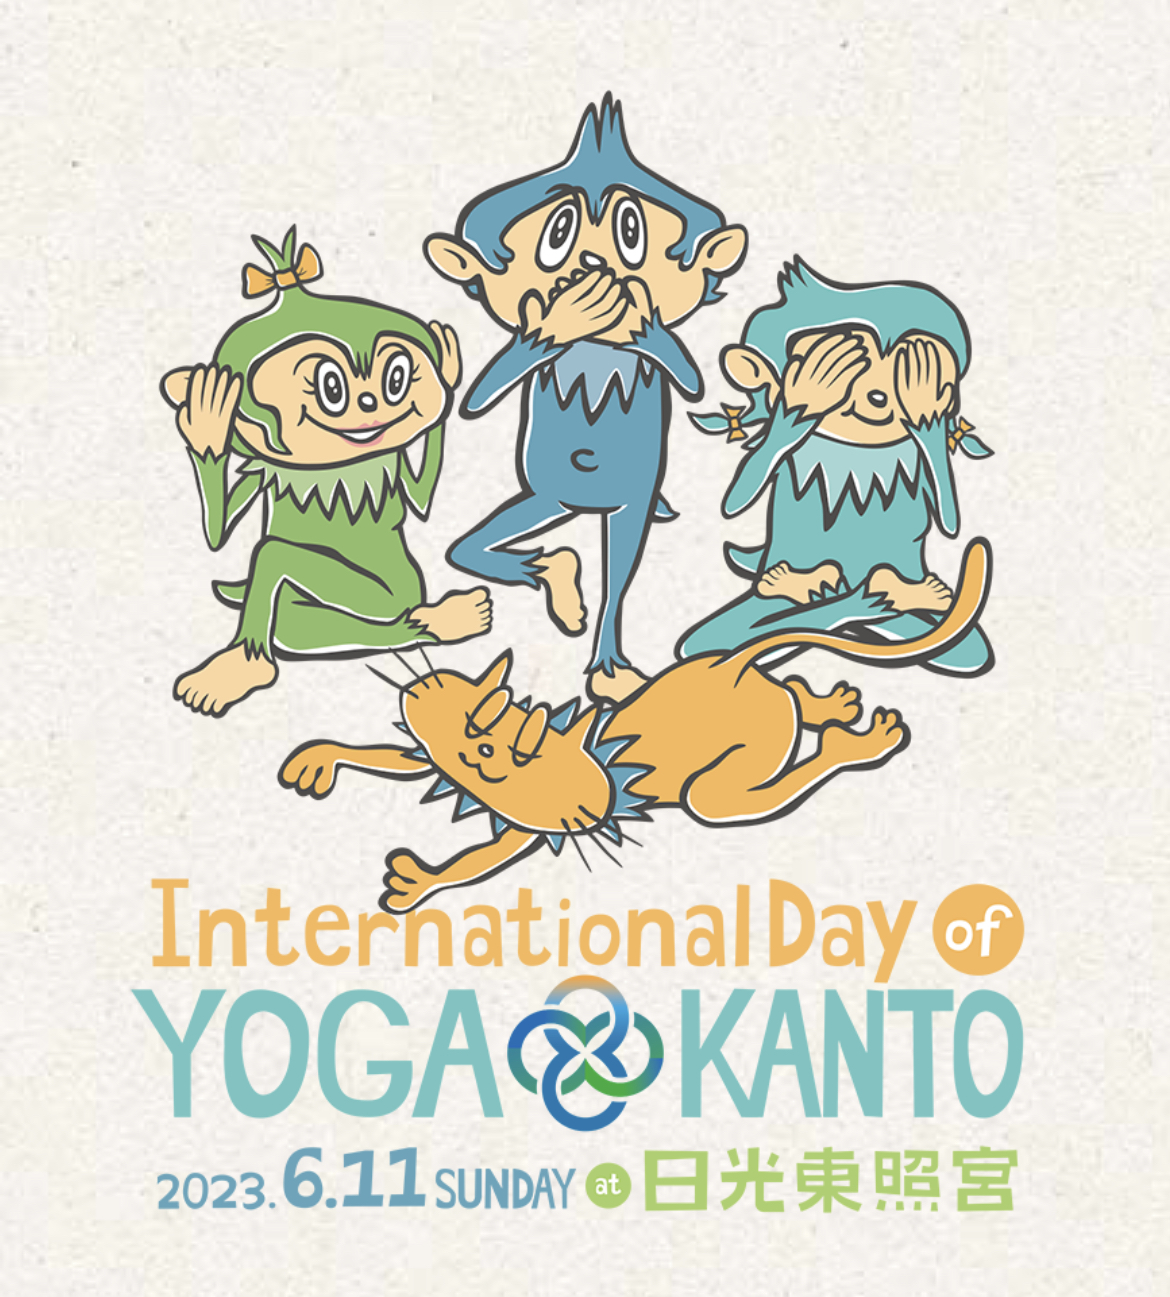 Nikko/Toshogu] International Yoga Day Kanto 2023 Will Be Held At Nikko Toshogu! 